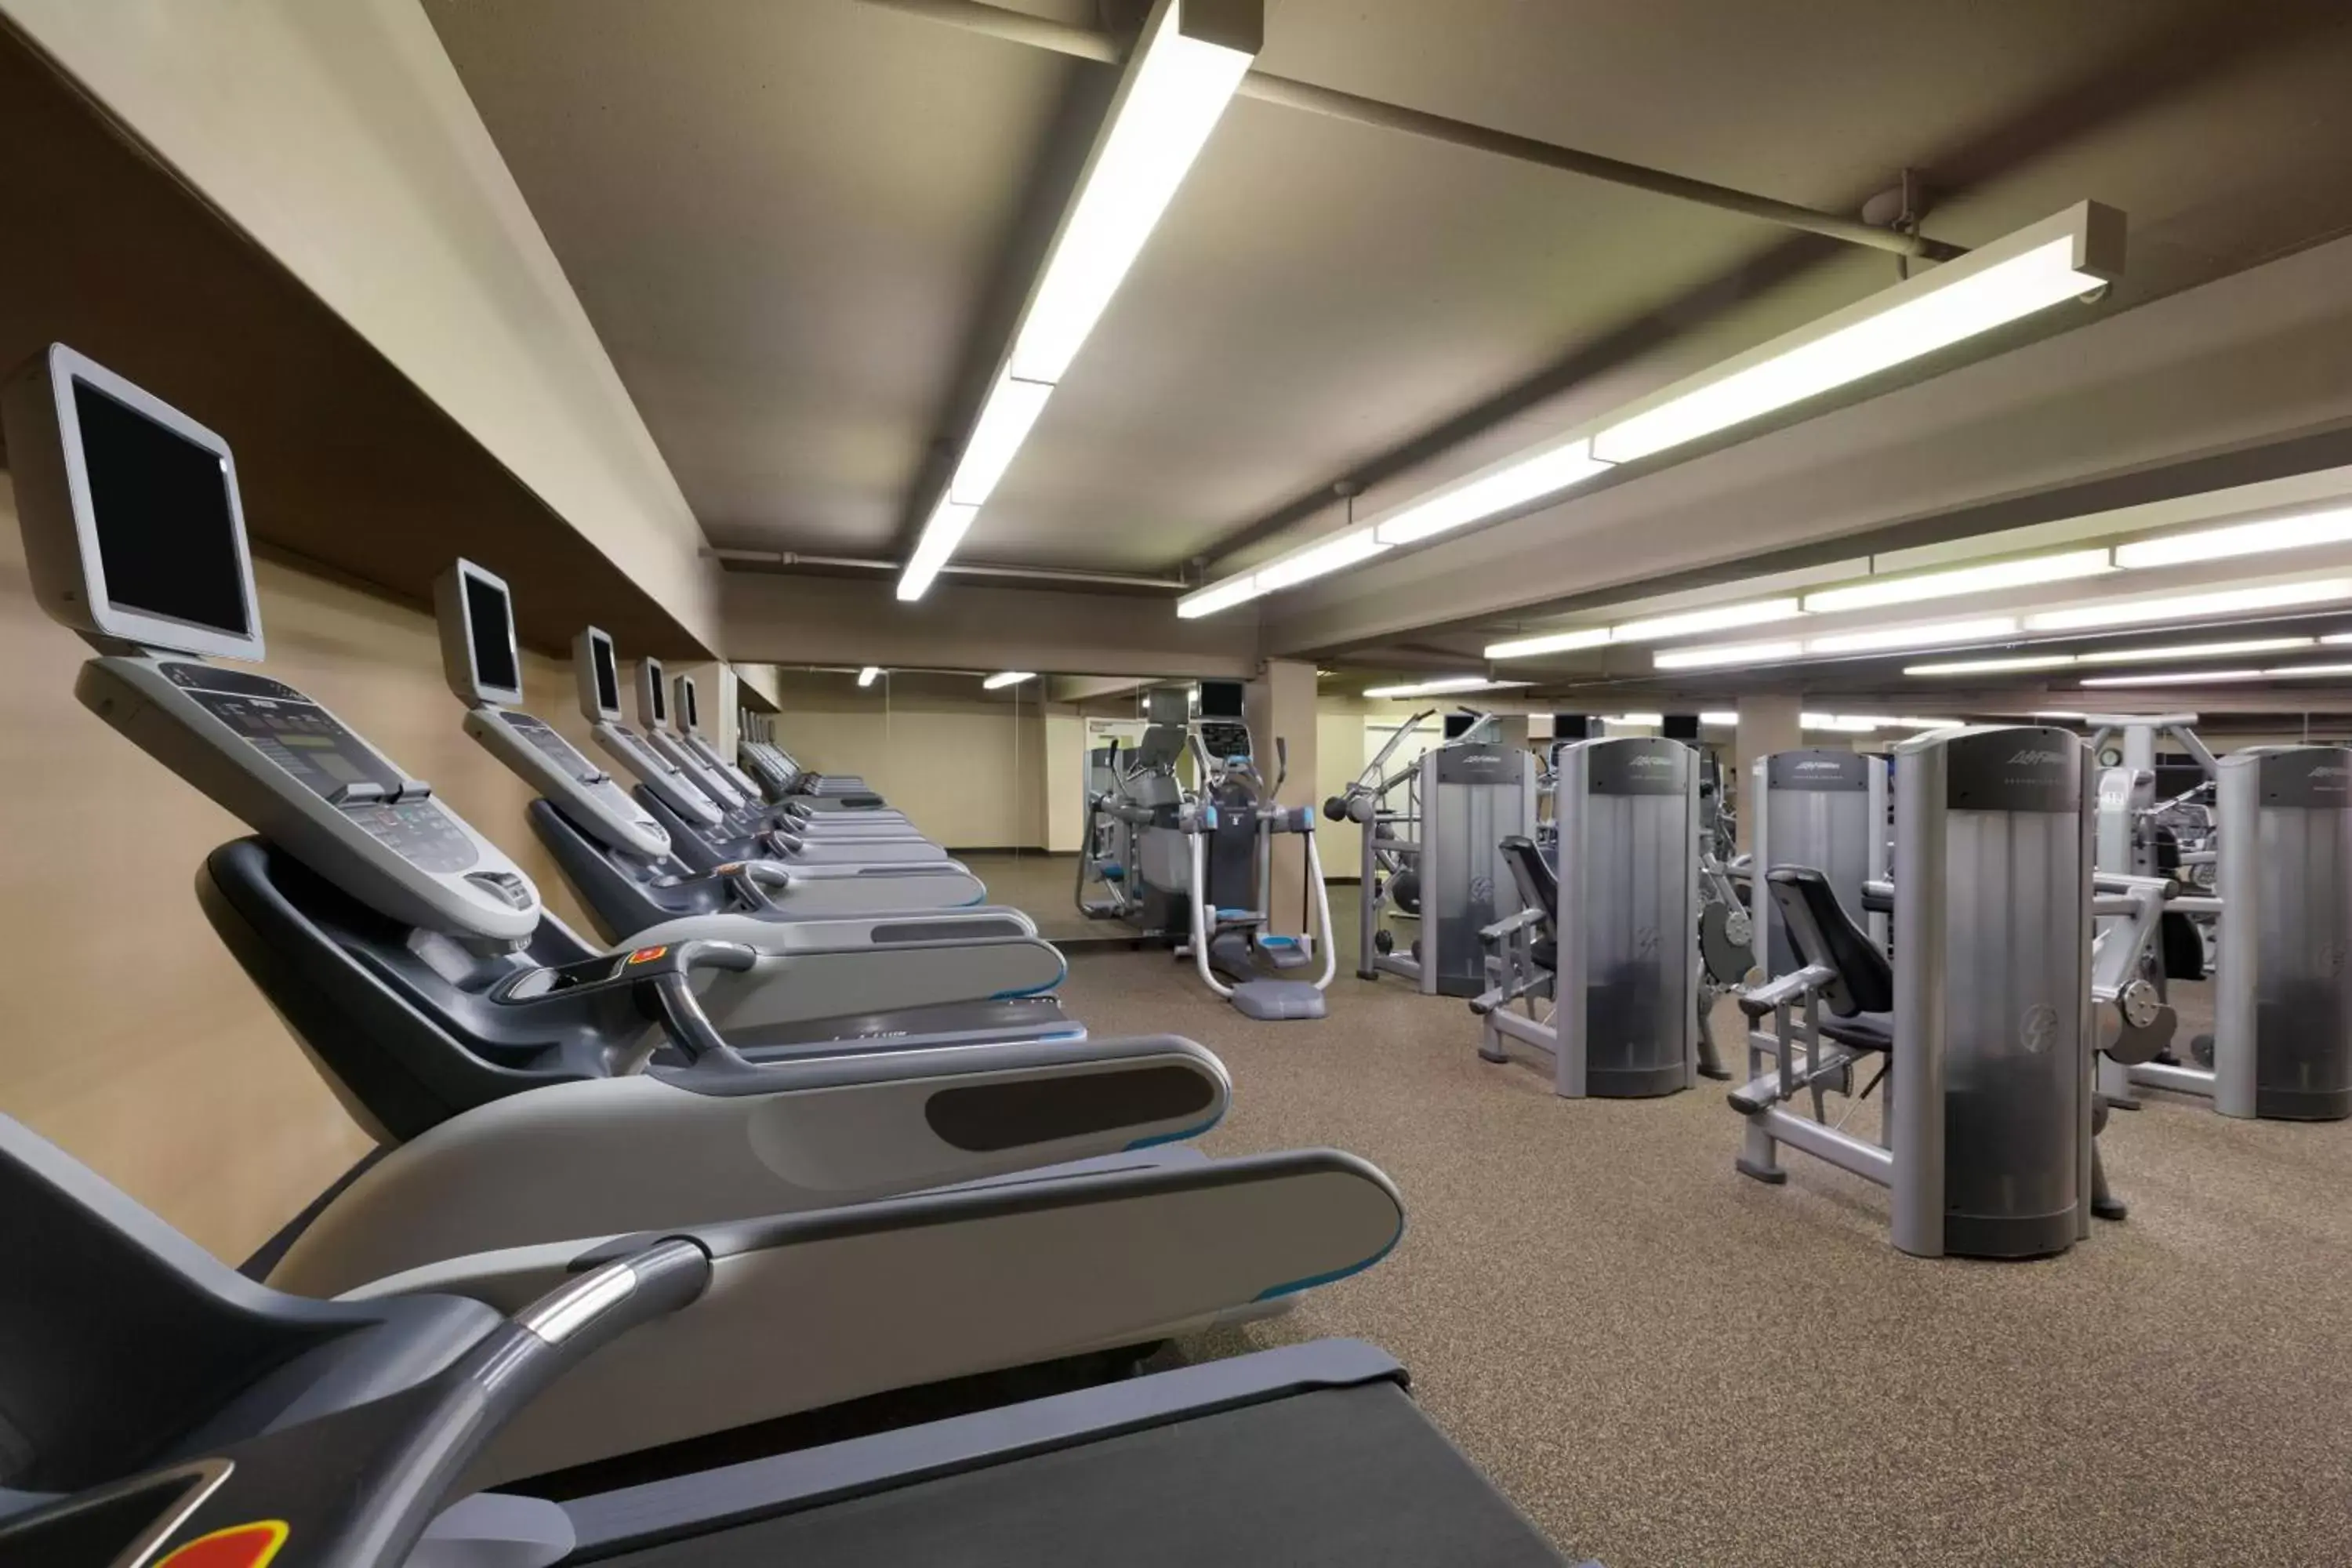 Fitness centre/facilities, Fitness Center/Facilities in Walnut Creek Marriott